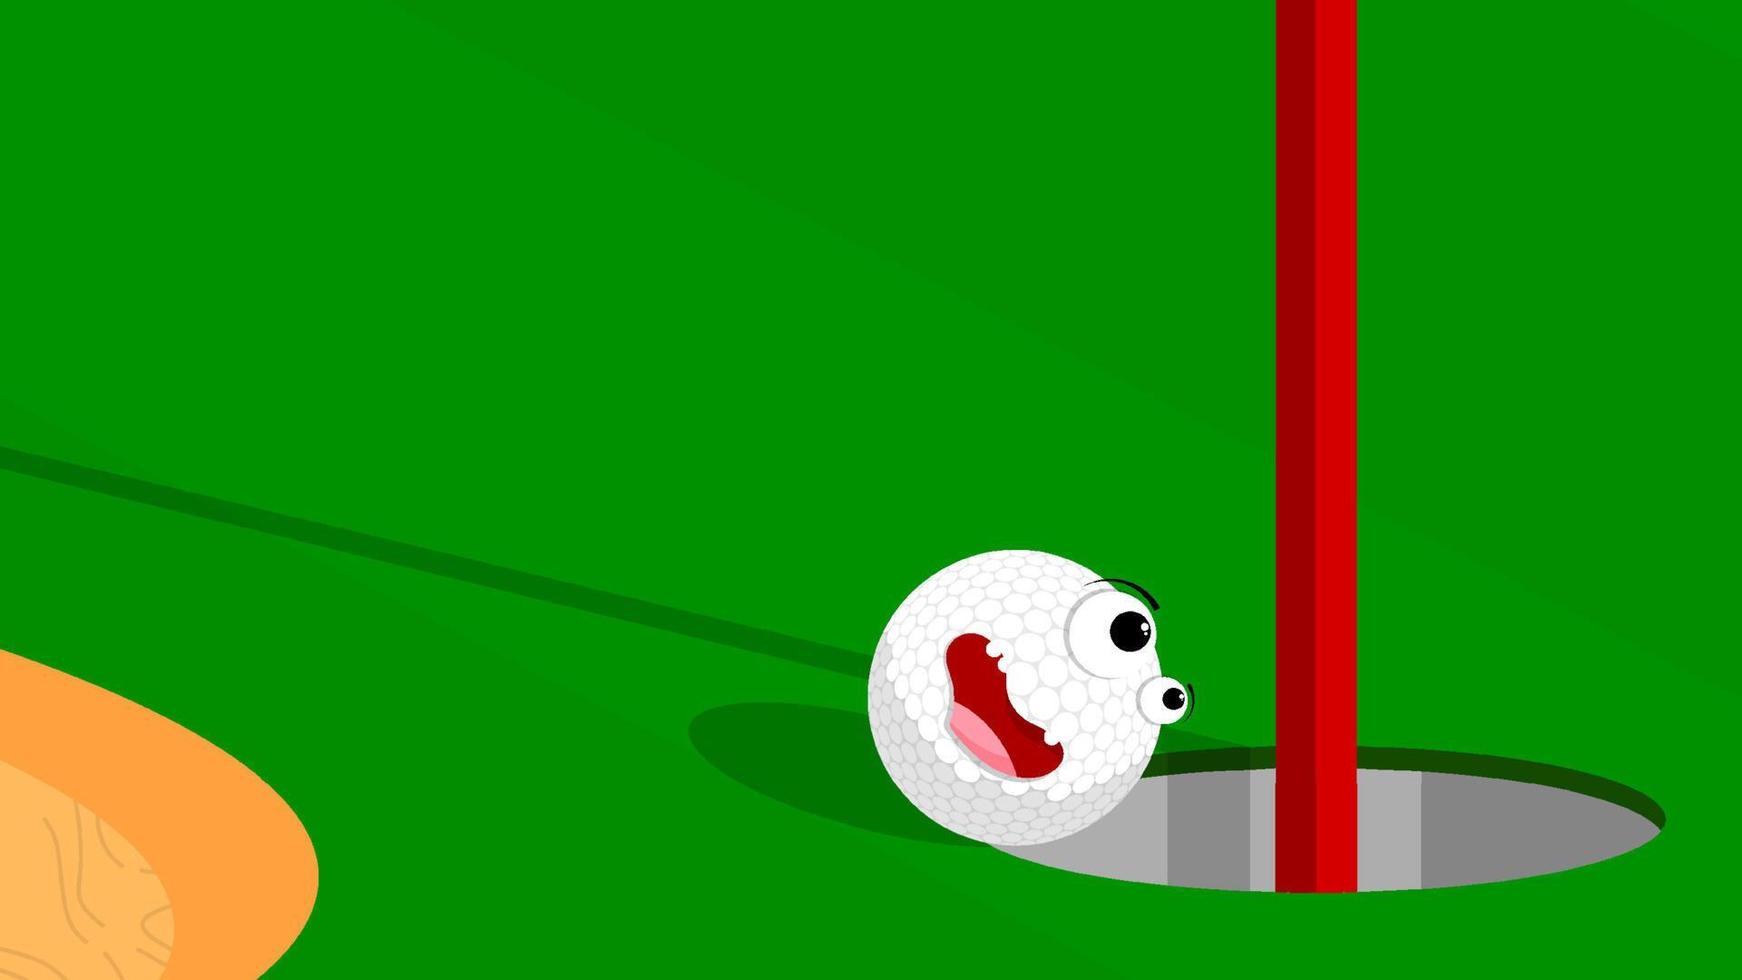 pelota de golf deportiva divertida y alegre rodando en un agujero en un campo verde. hoyo de golf en campo marcado con bandera. Estilo de vida activo. vector de dibujos animados